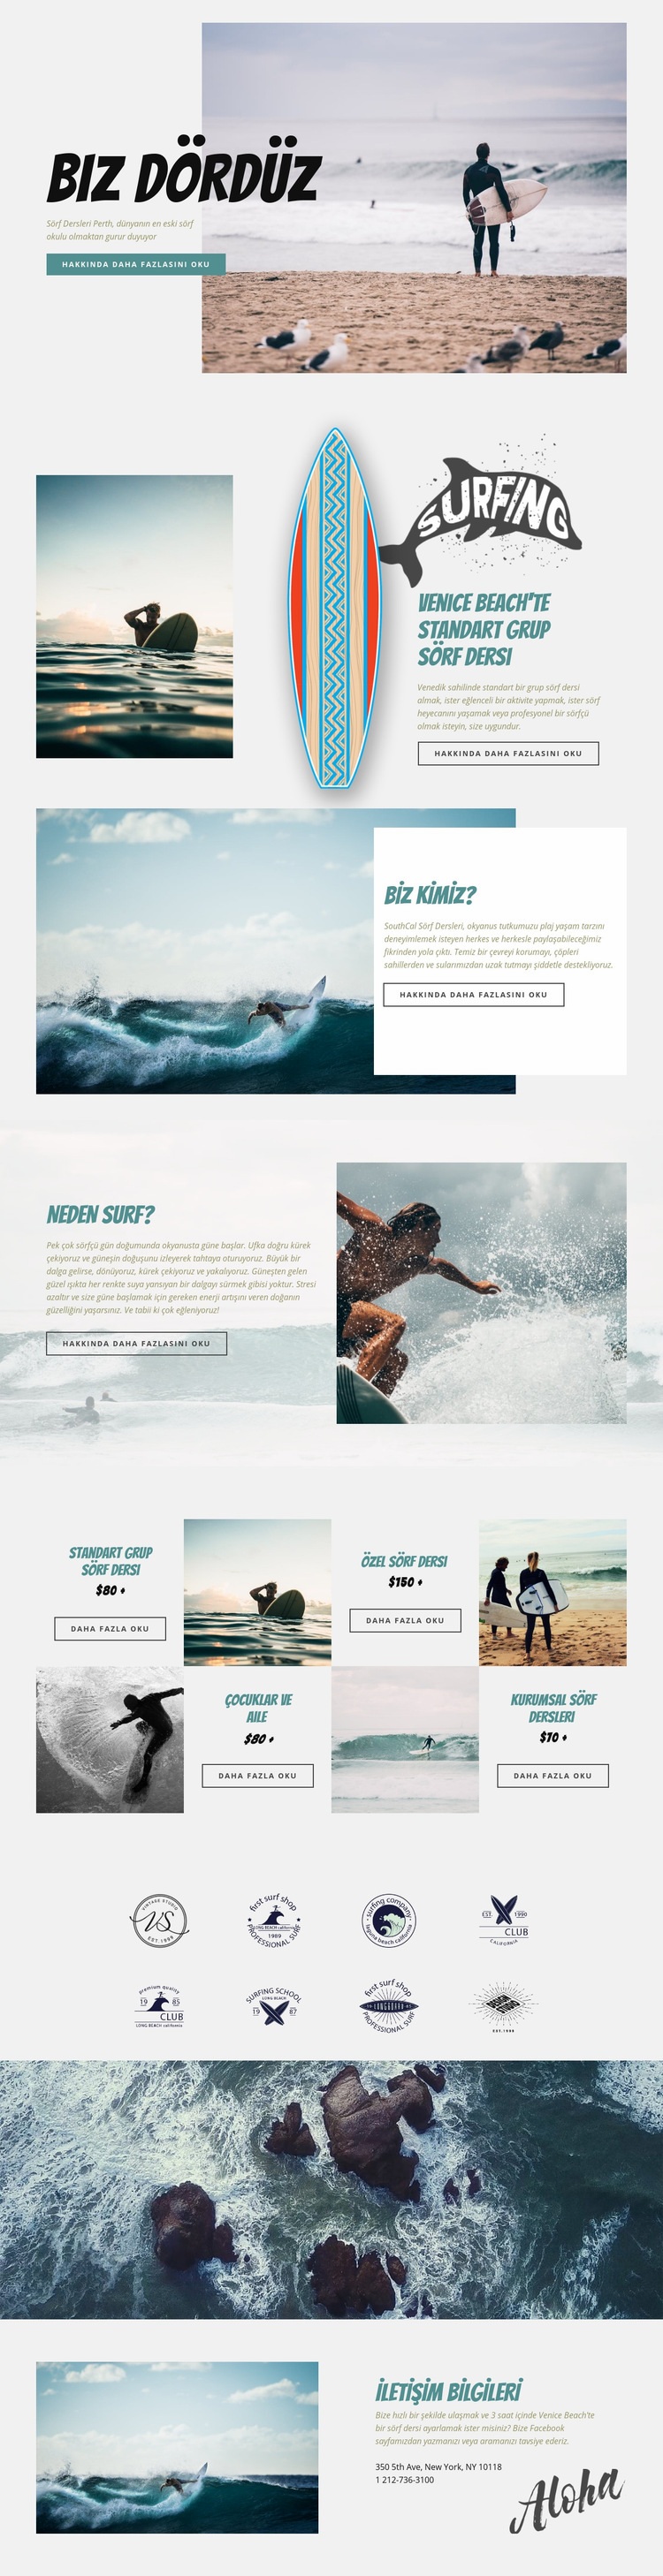 Sörf yapmak Web sitesi tasarımı